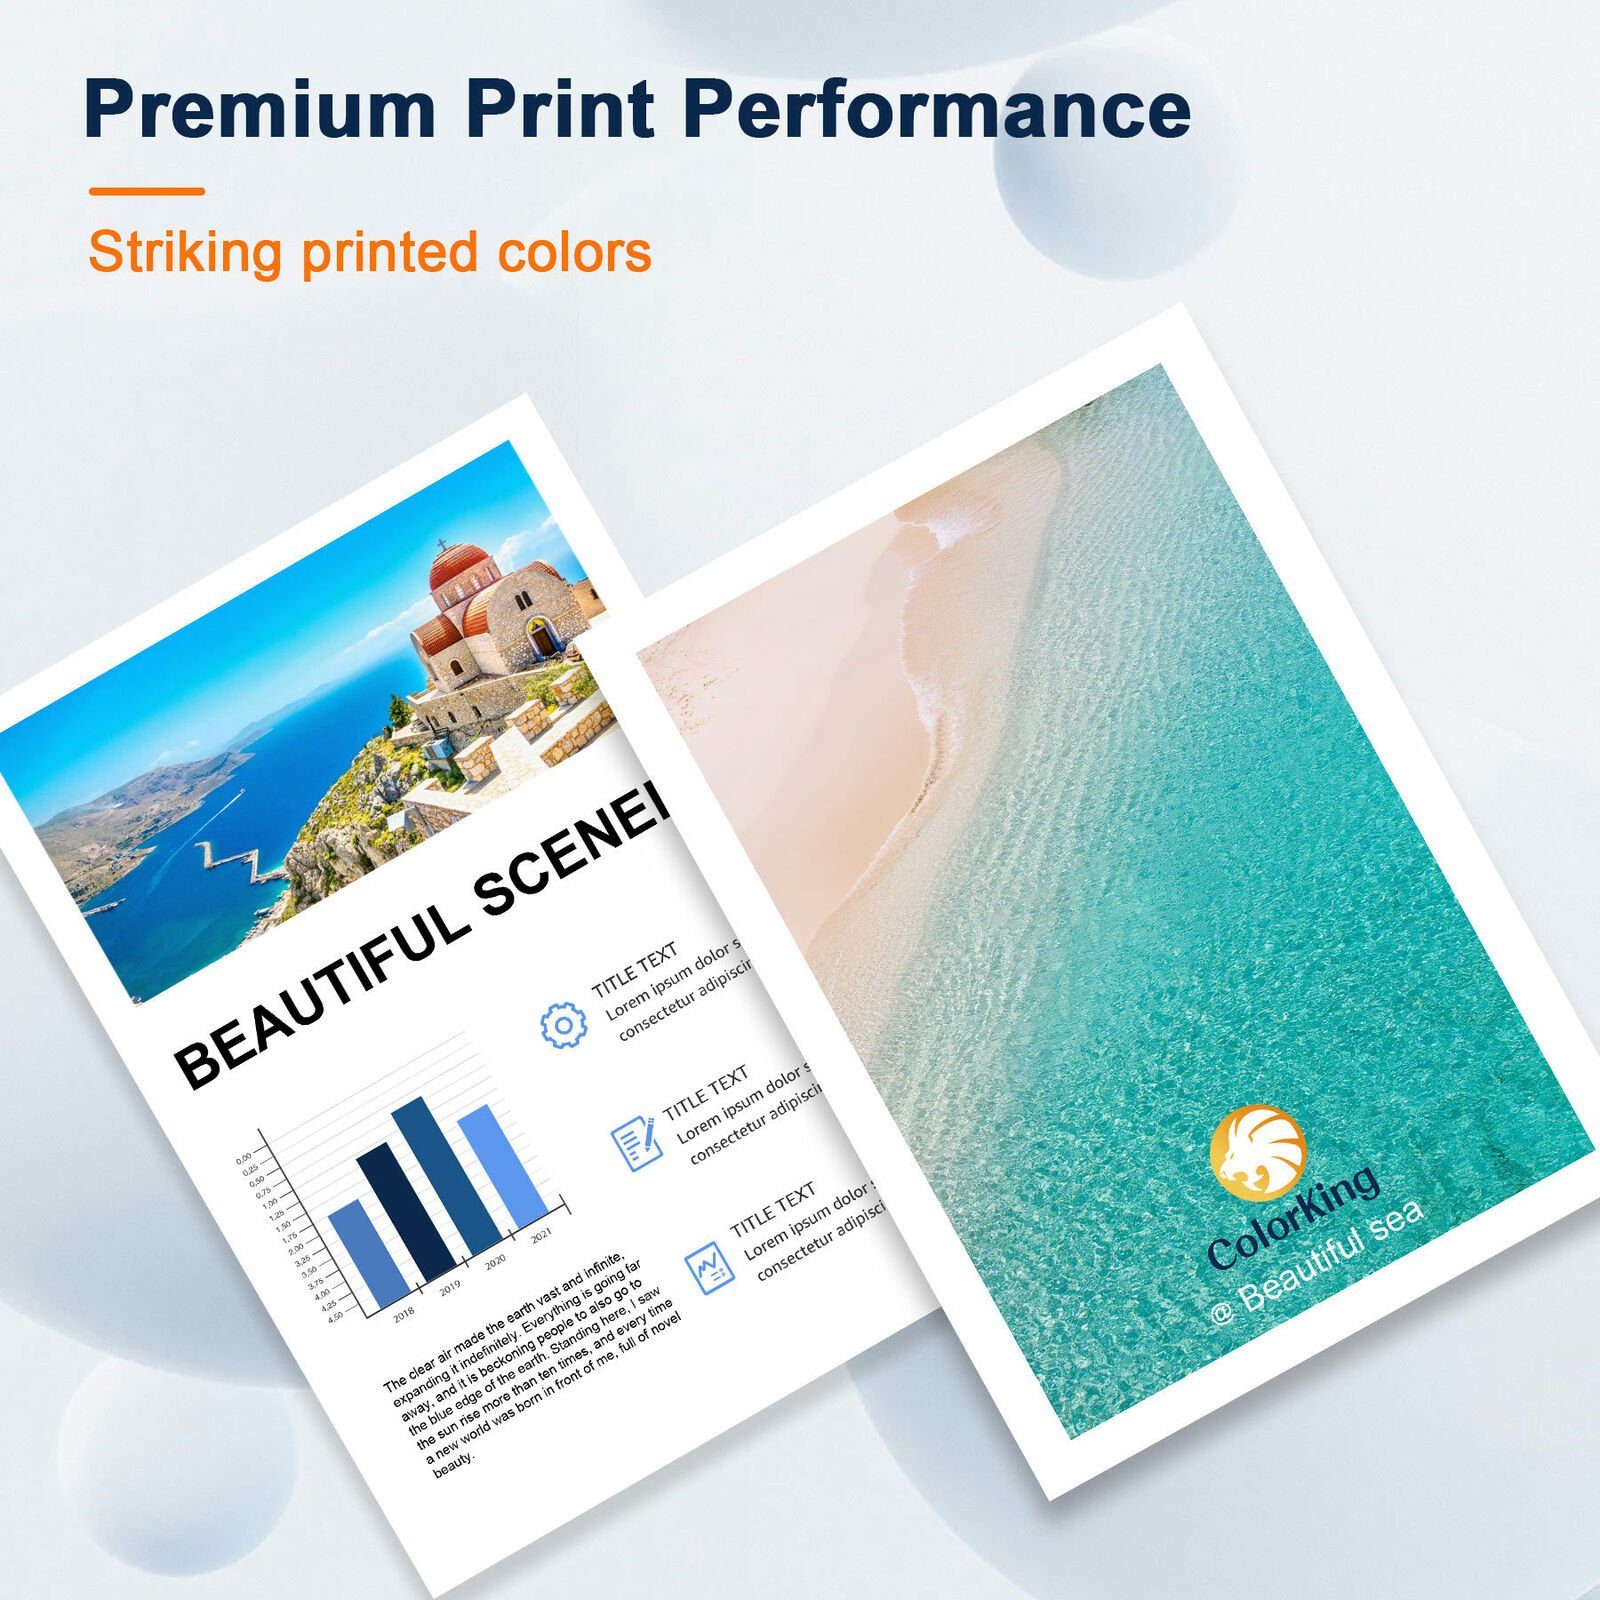 (WorkForce 5er Pro Multipack EPSON 405 ColorKing 405XL WF-4820DWF) Tintenpatrone XL für Druckerpatronen